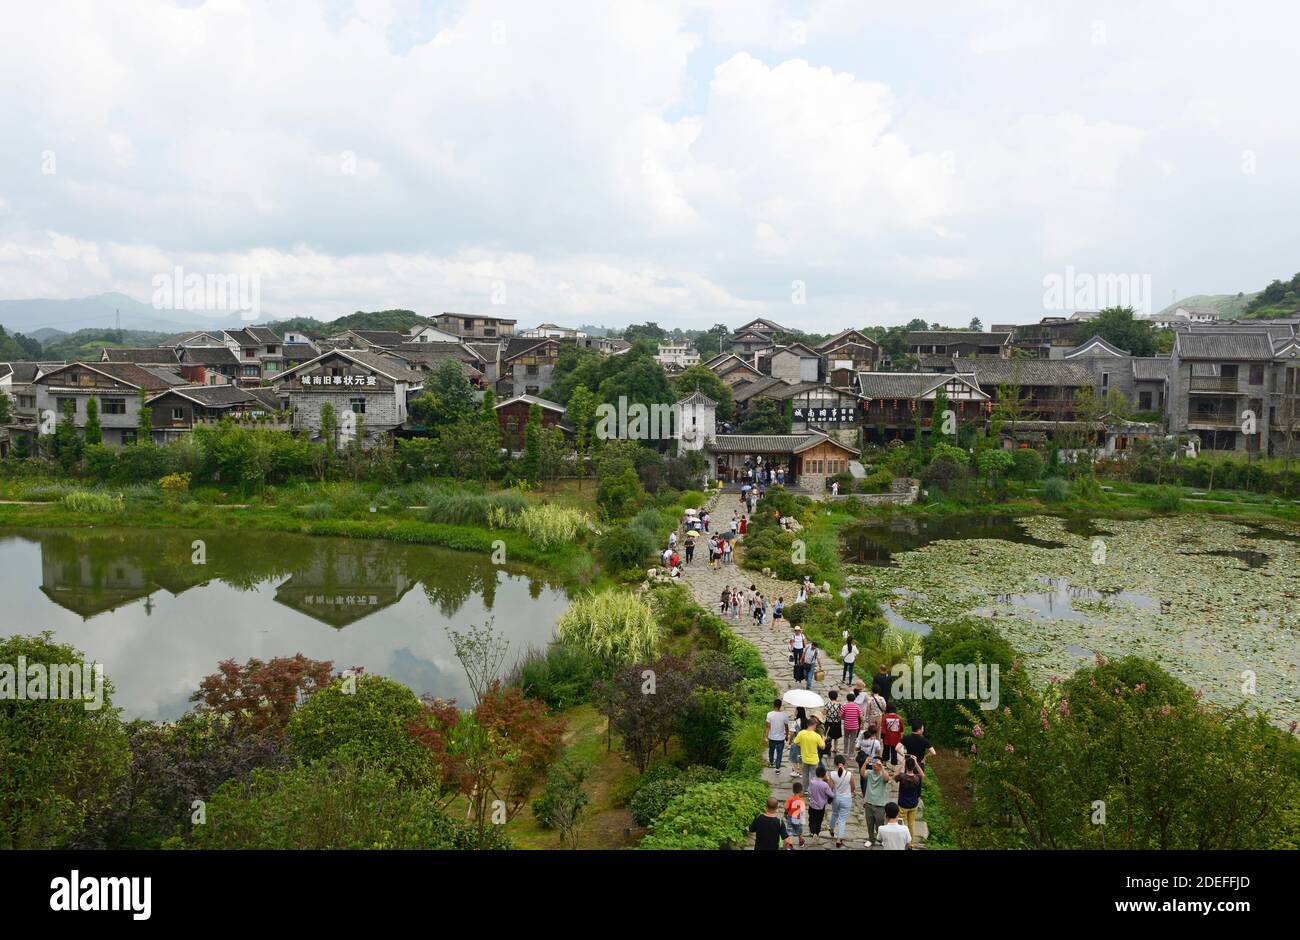 Vista sobre las afueras de la antigua ciudad de Qingyan, una atracción turística local con murallas de la ciudad preservadas, cerca de Guiyang, China Foto de stock